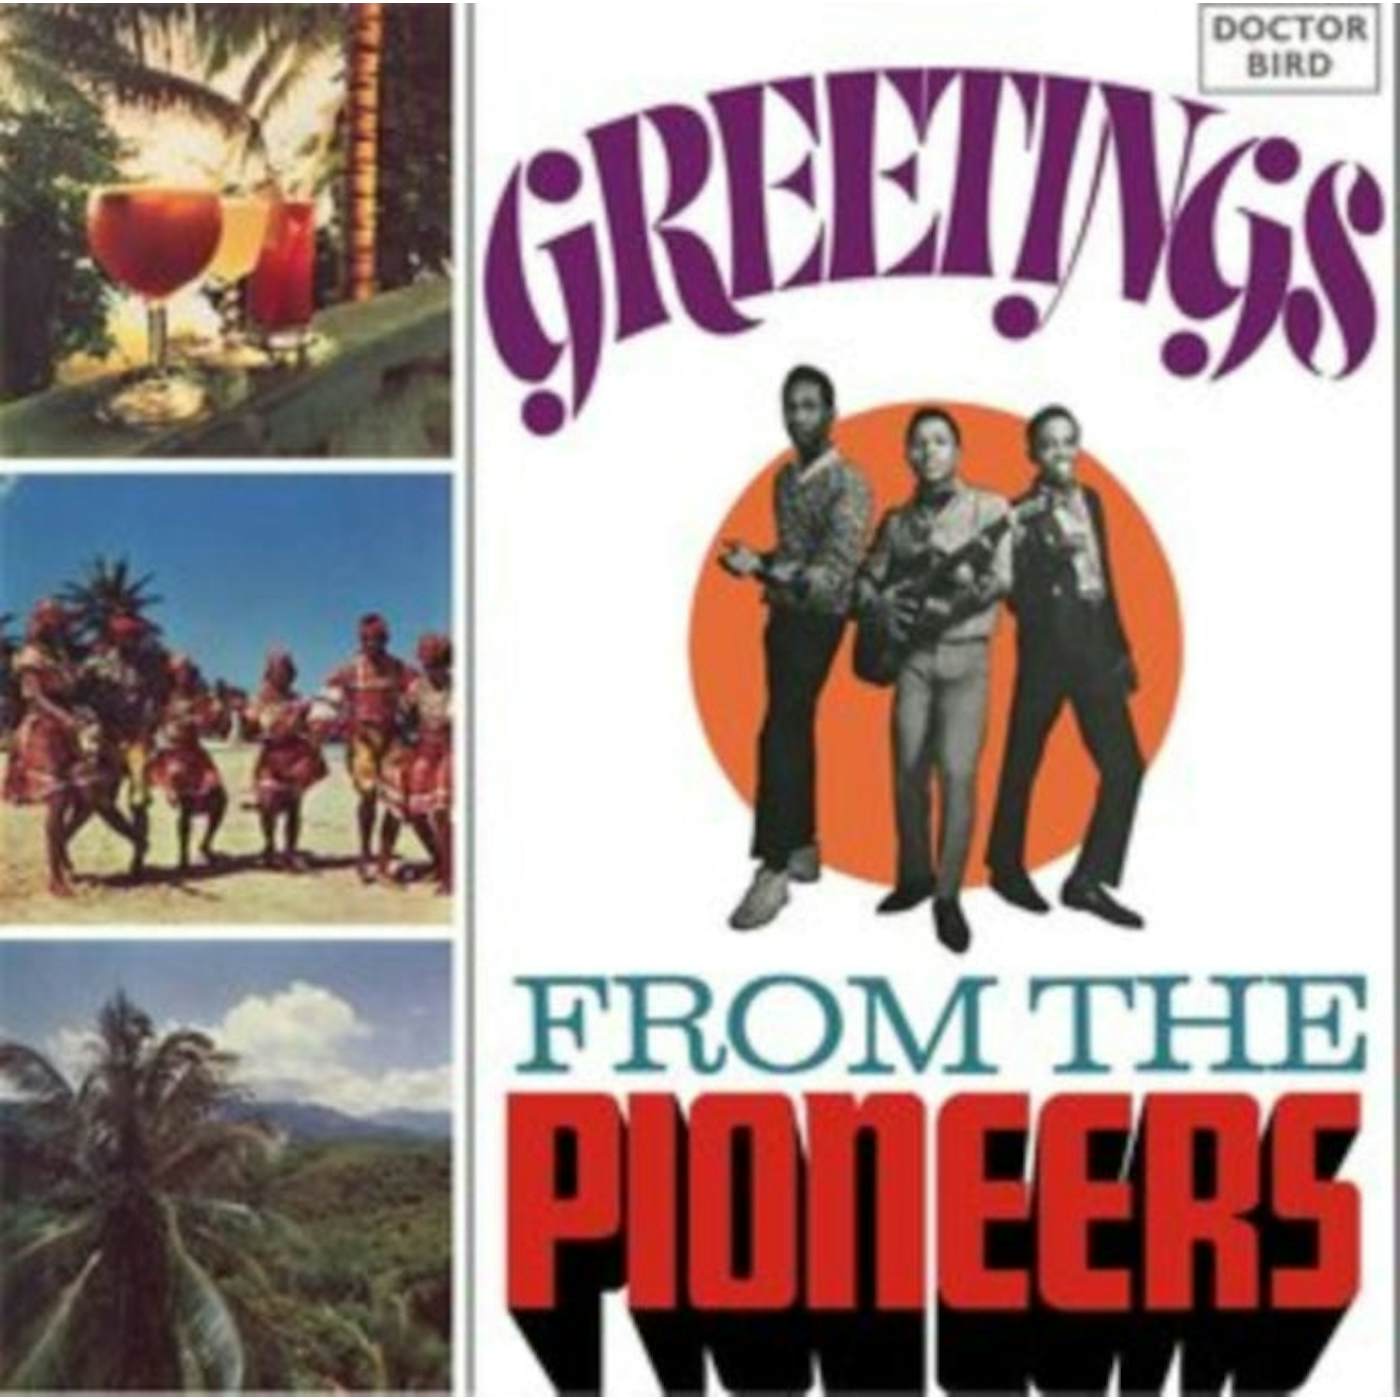 Pioneers CD - Greetings From The Pioneers (Expanded Original Album)